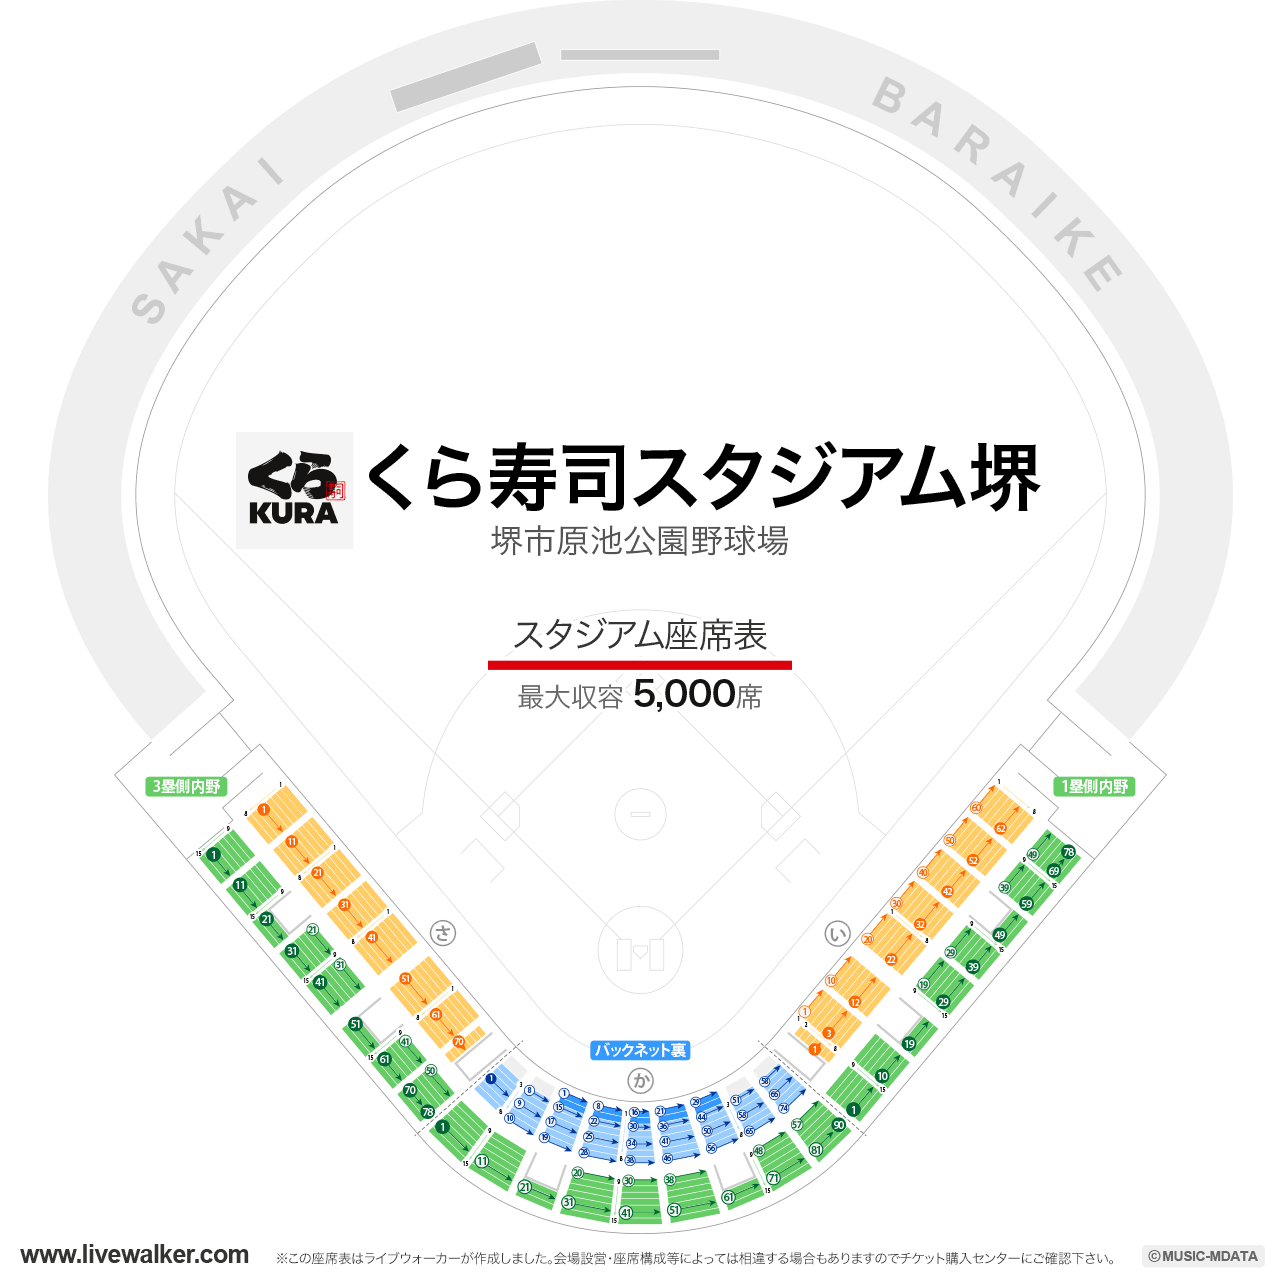 くら寿司スタジアム堺の座席表